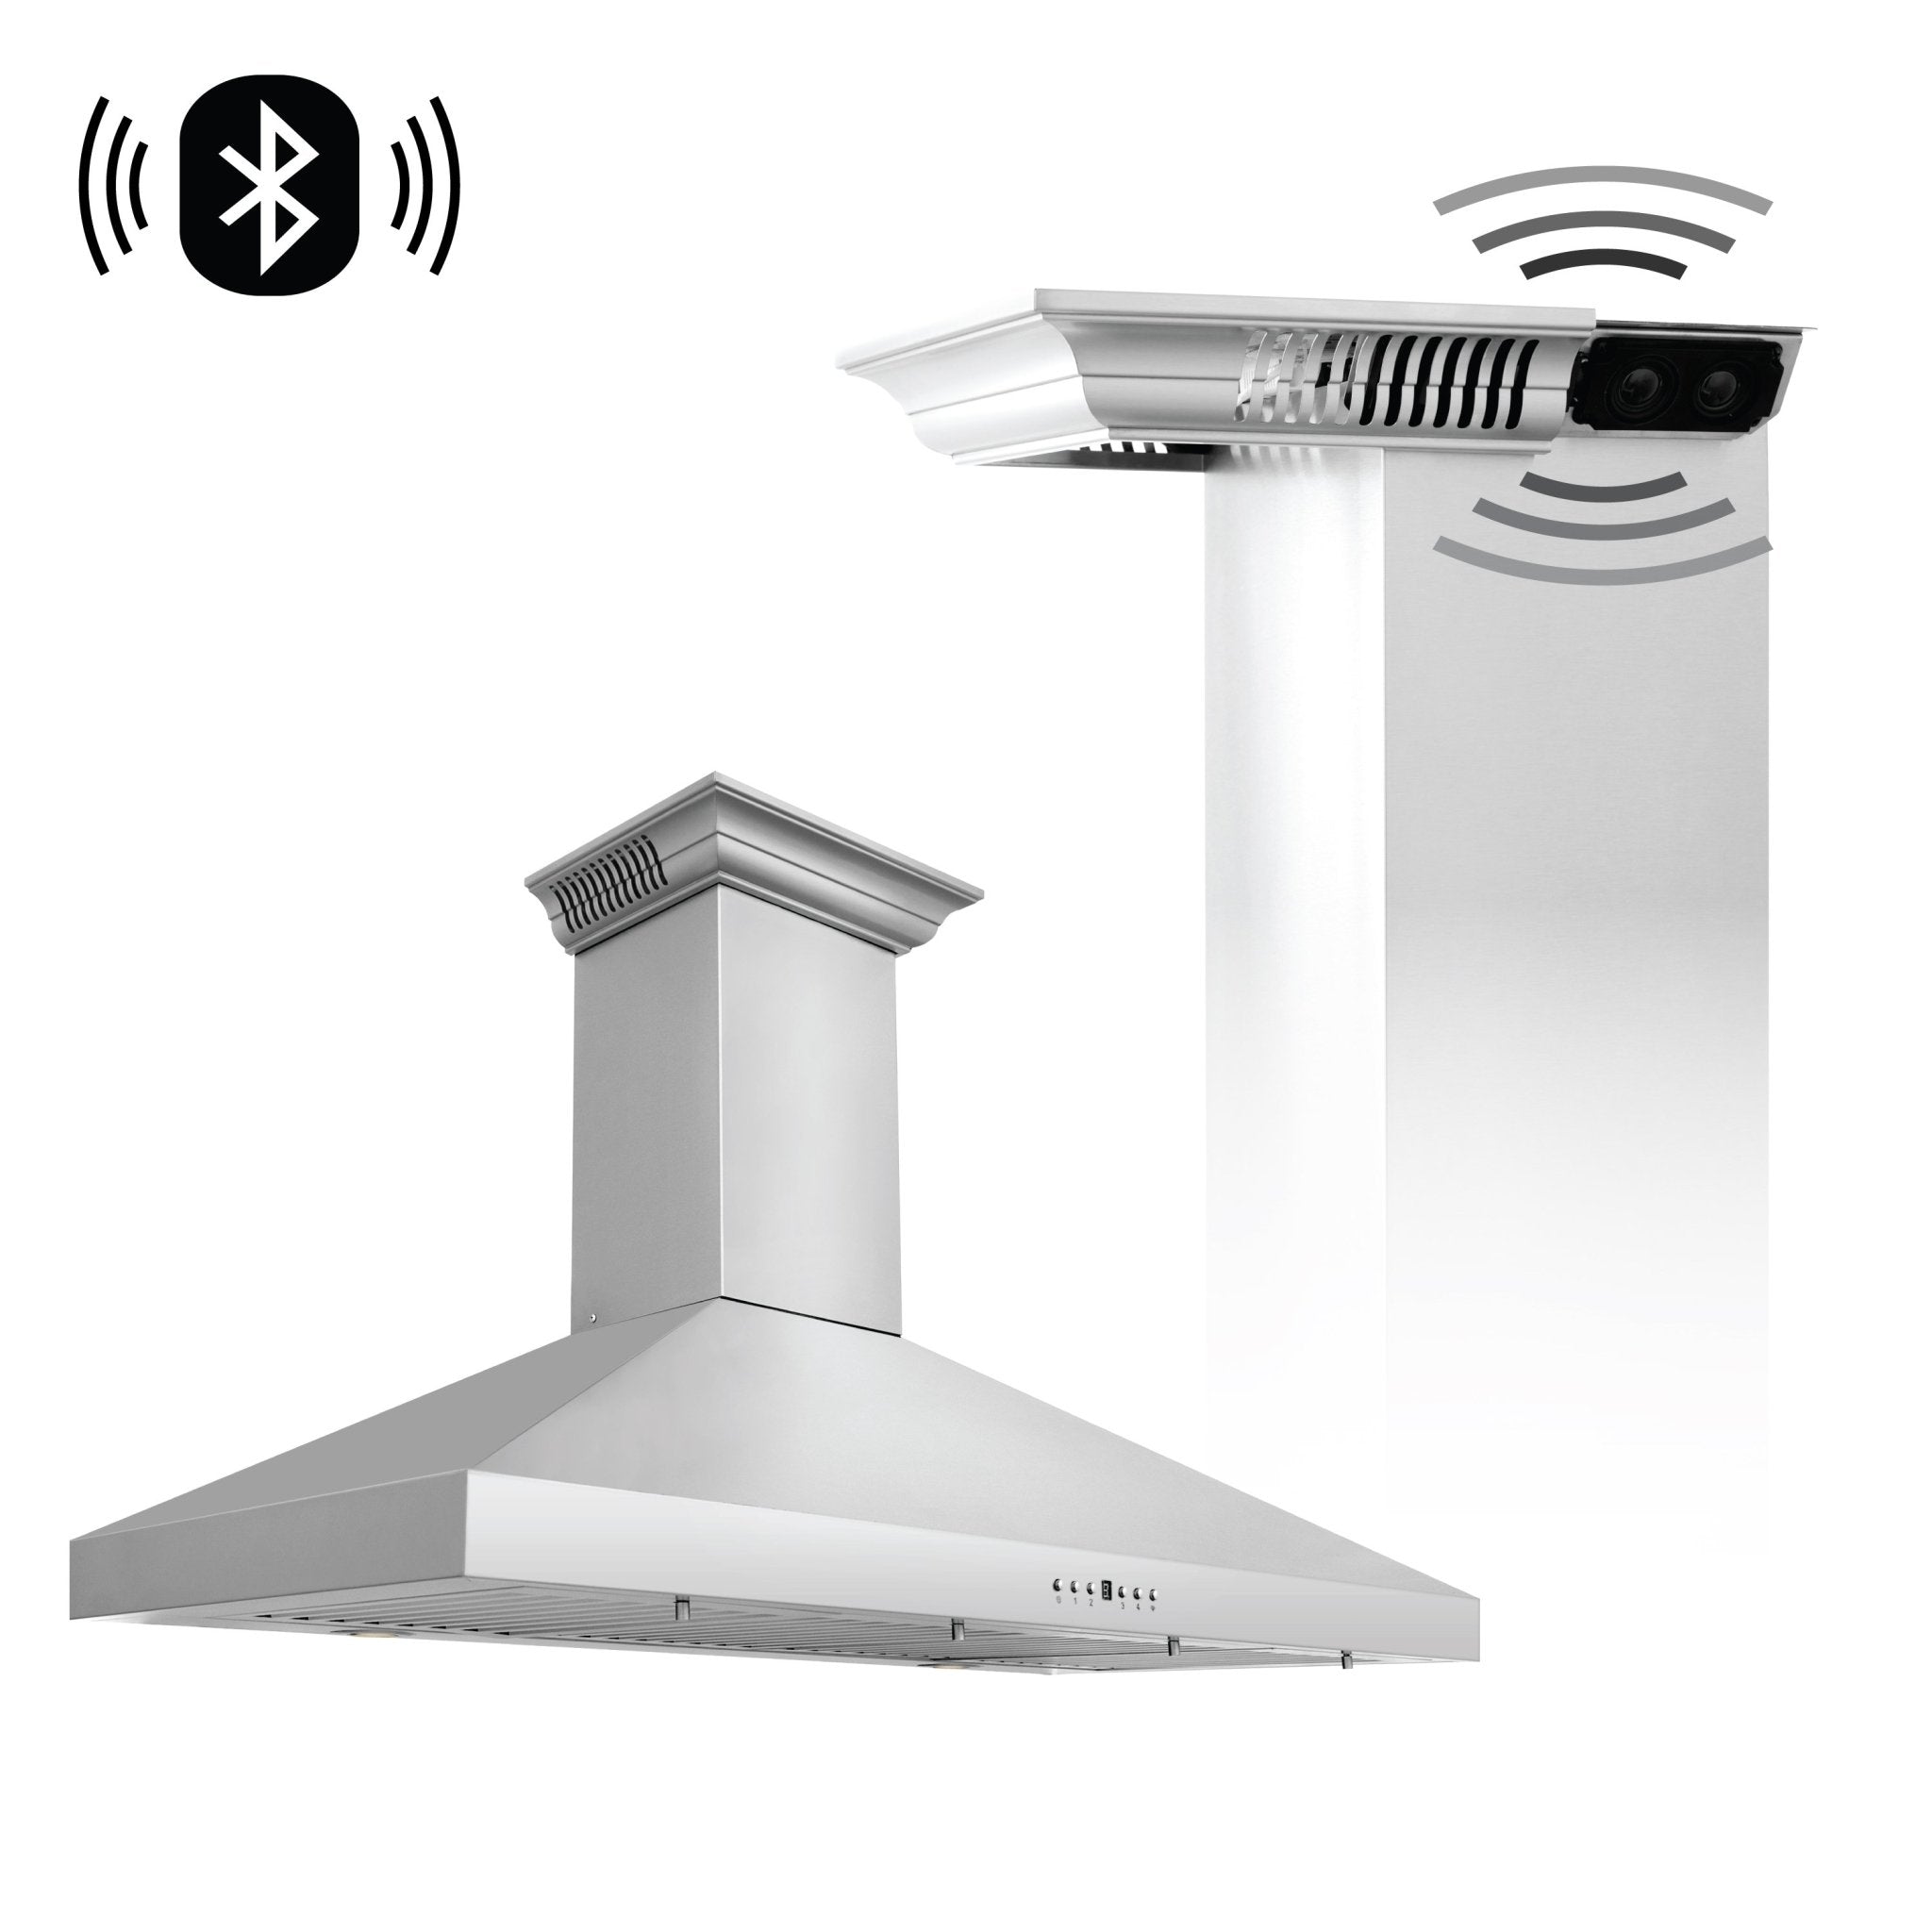 ZLINE Wall Mount Range Hood In Stainless Steel With Built-In CrownSound® Bluetooth Speakers (KL3CRN-BT) - Rustic Kitchen & Bath - Ranges Hoods - ZLINE Kitchen and Bath